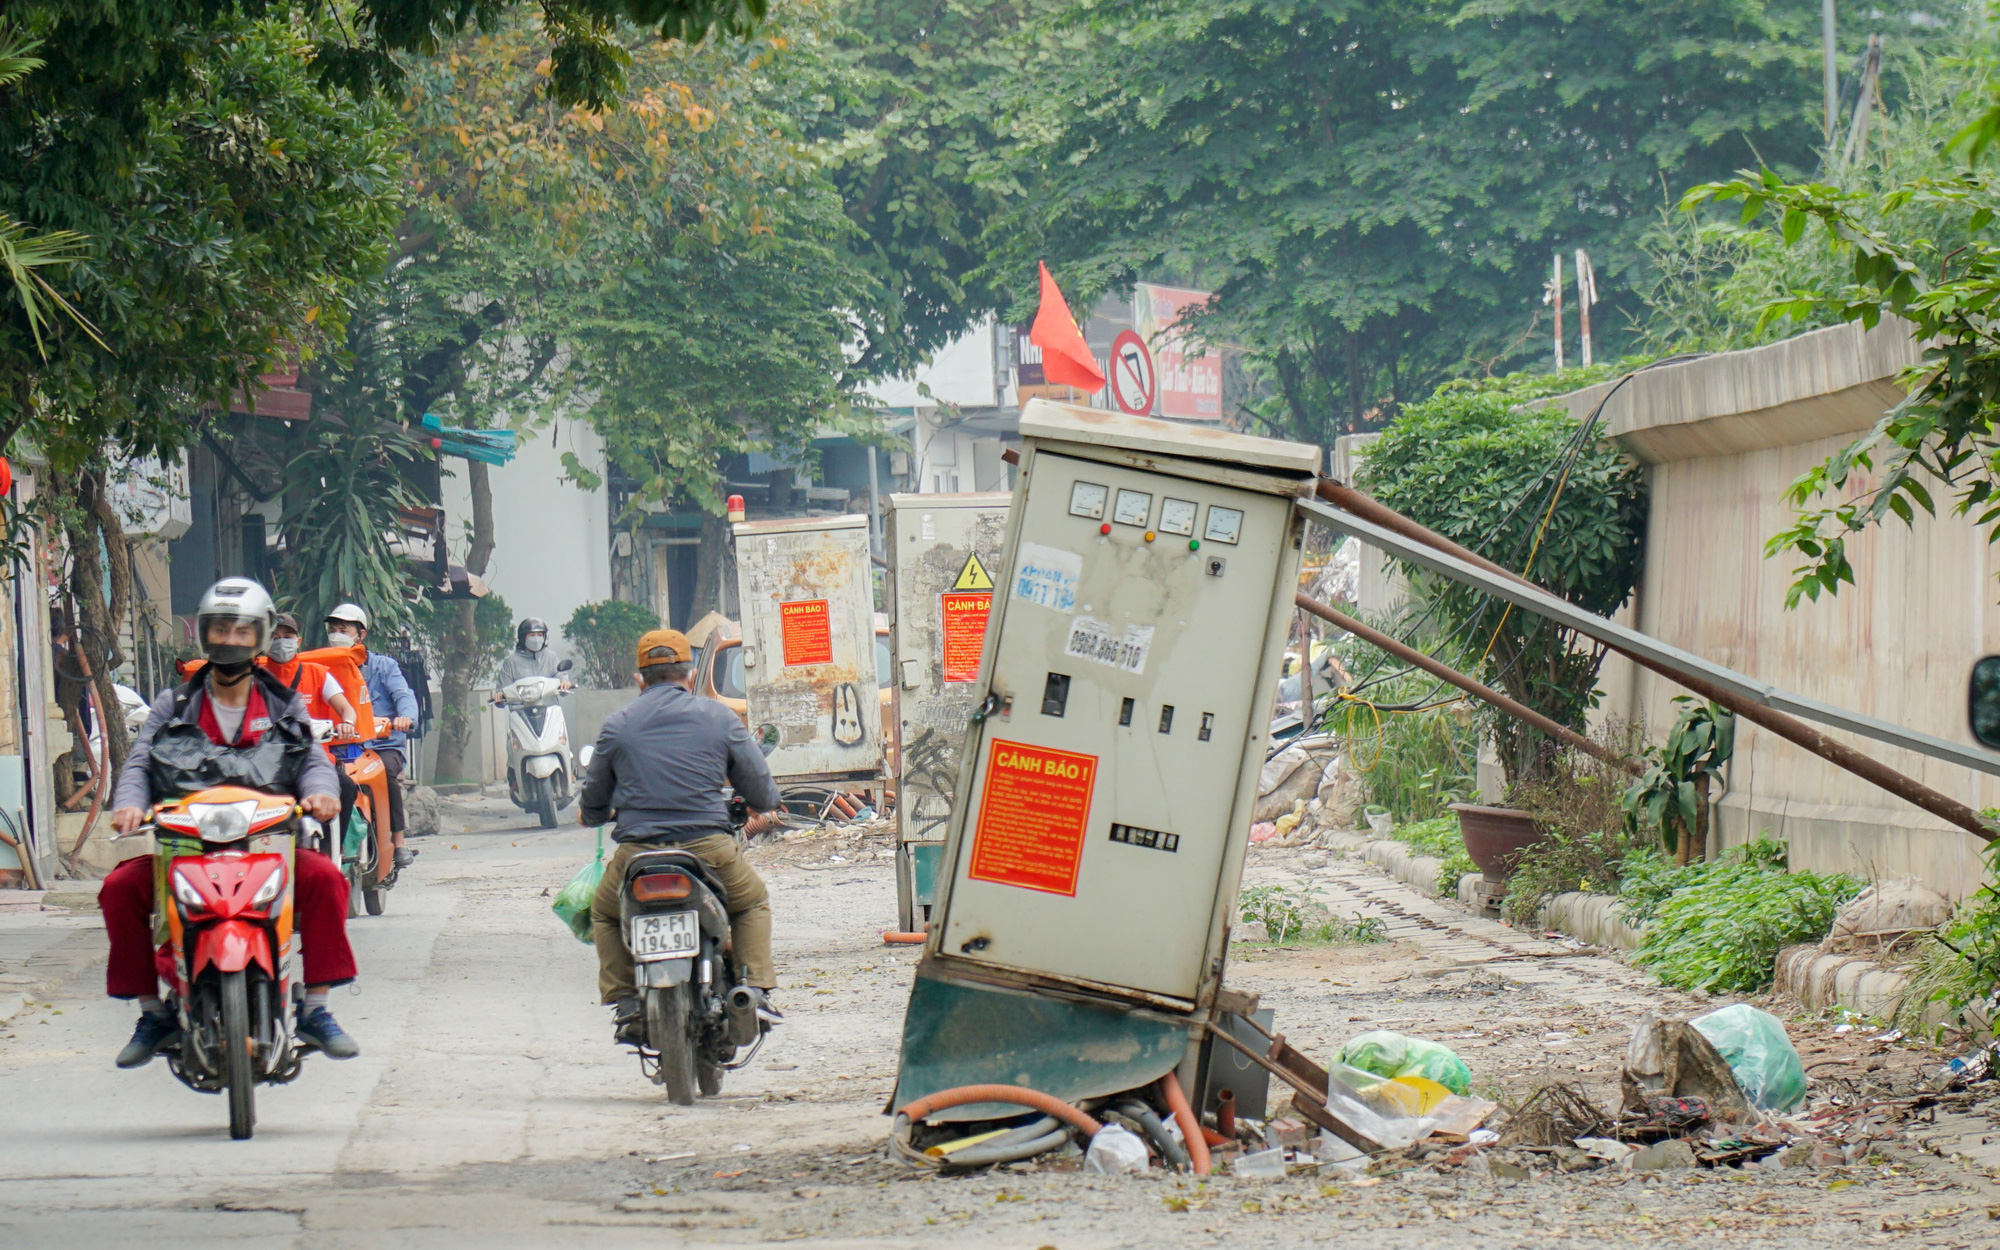 Hà Nội: Hàng chục bốt điện "chống nạng" nằm siêu vẹo giữa đường gây nguy hiểm cho người dân